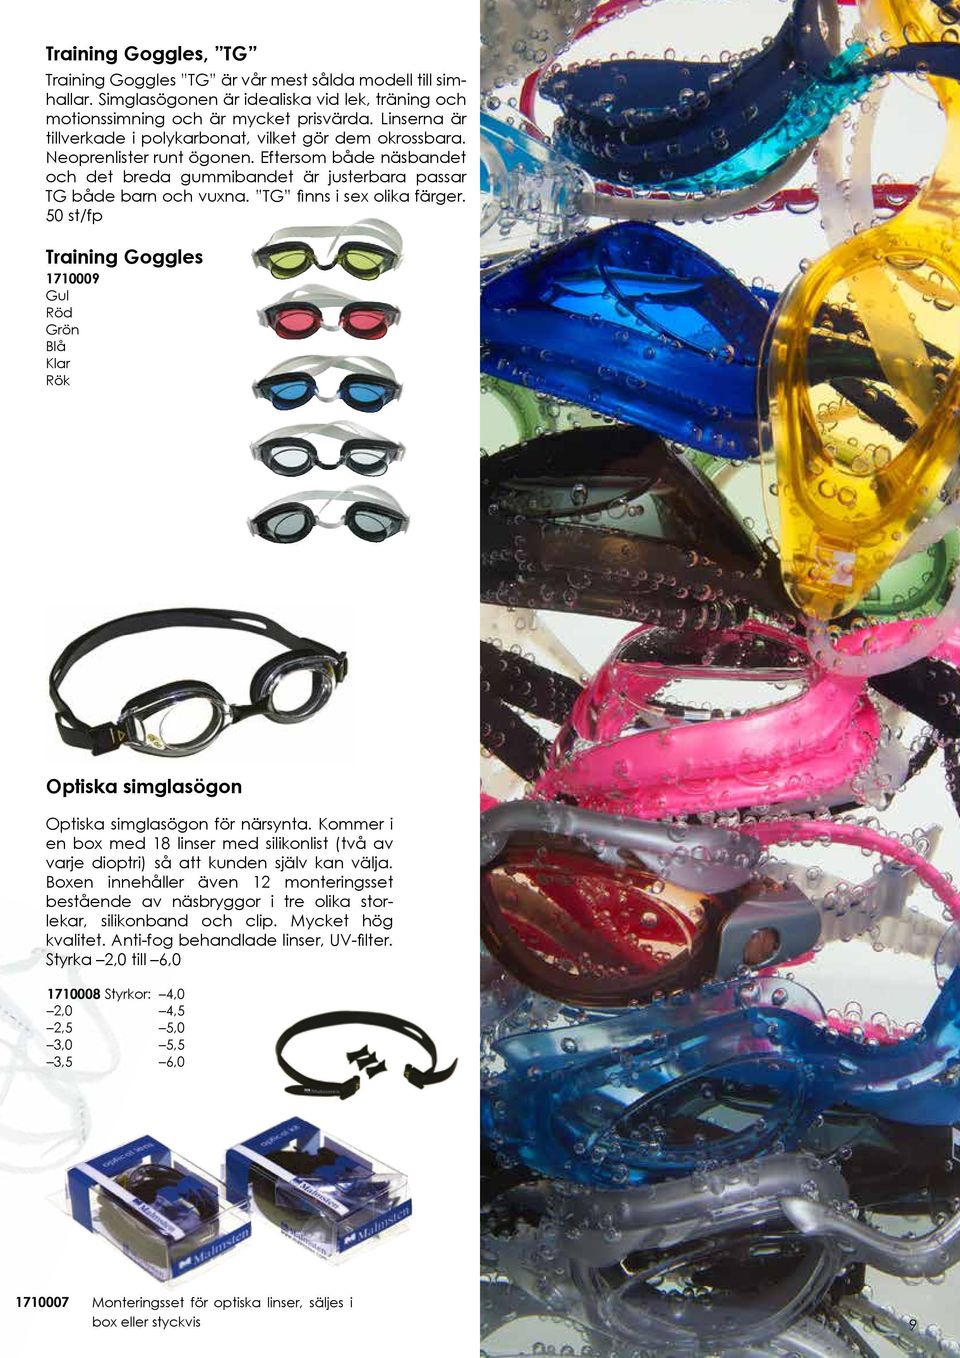 TG finns i sex olika färger. 50 st/fp Training Goggles 1710009 Gul Röd Grön Blå Klar Rök Optiska simglasögon Optiska simglasögon för närsynta.